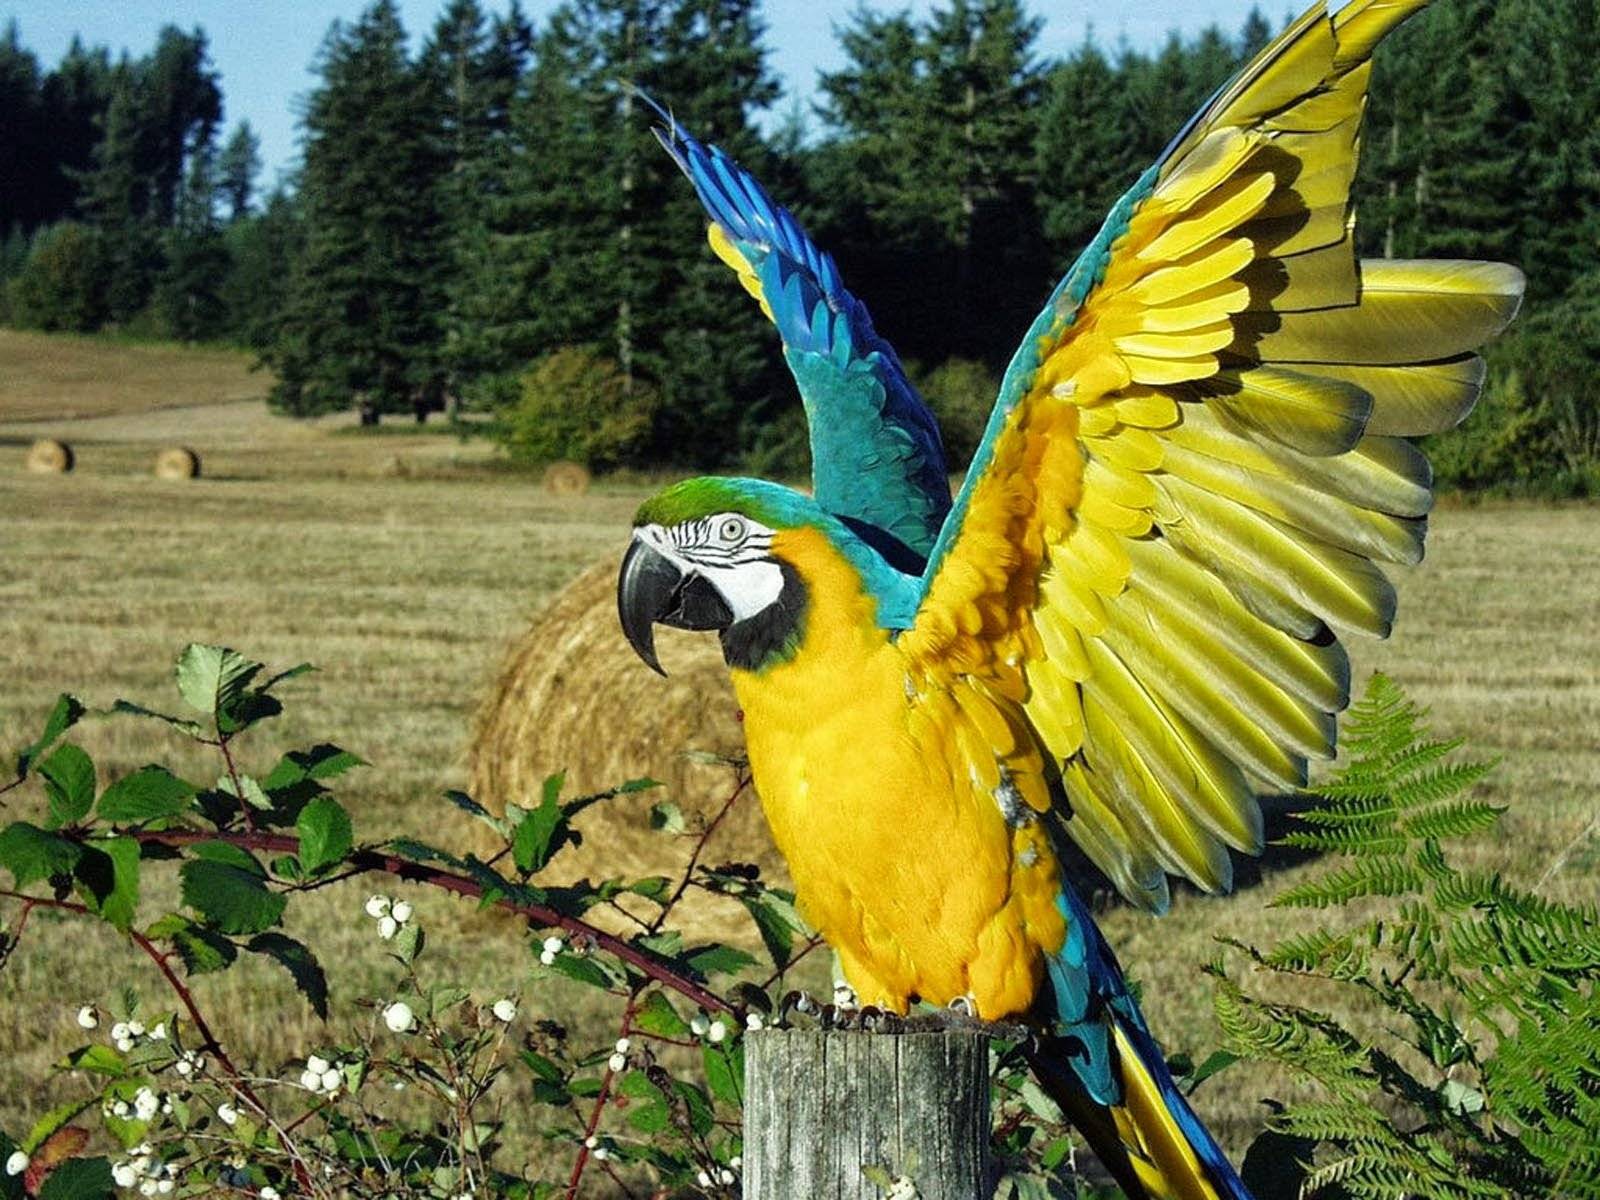 Разновидности попугаев ара и особенности их внешности